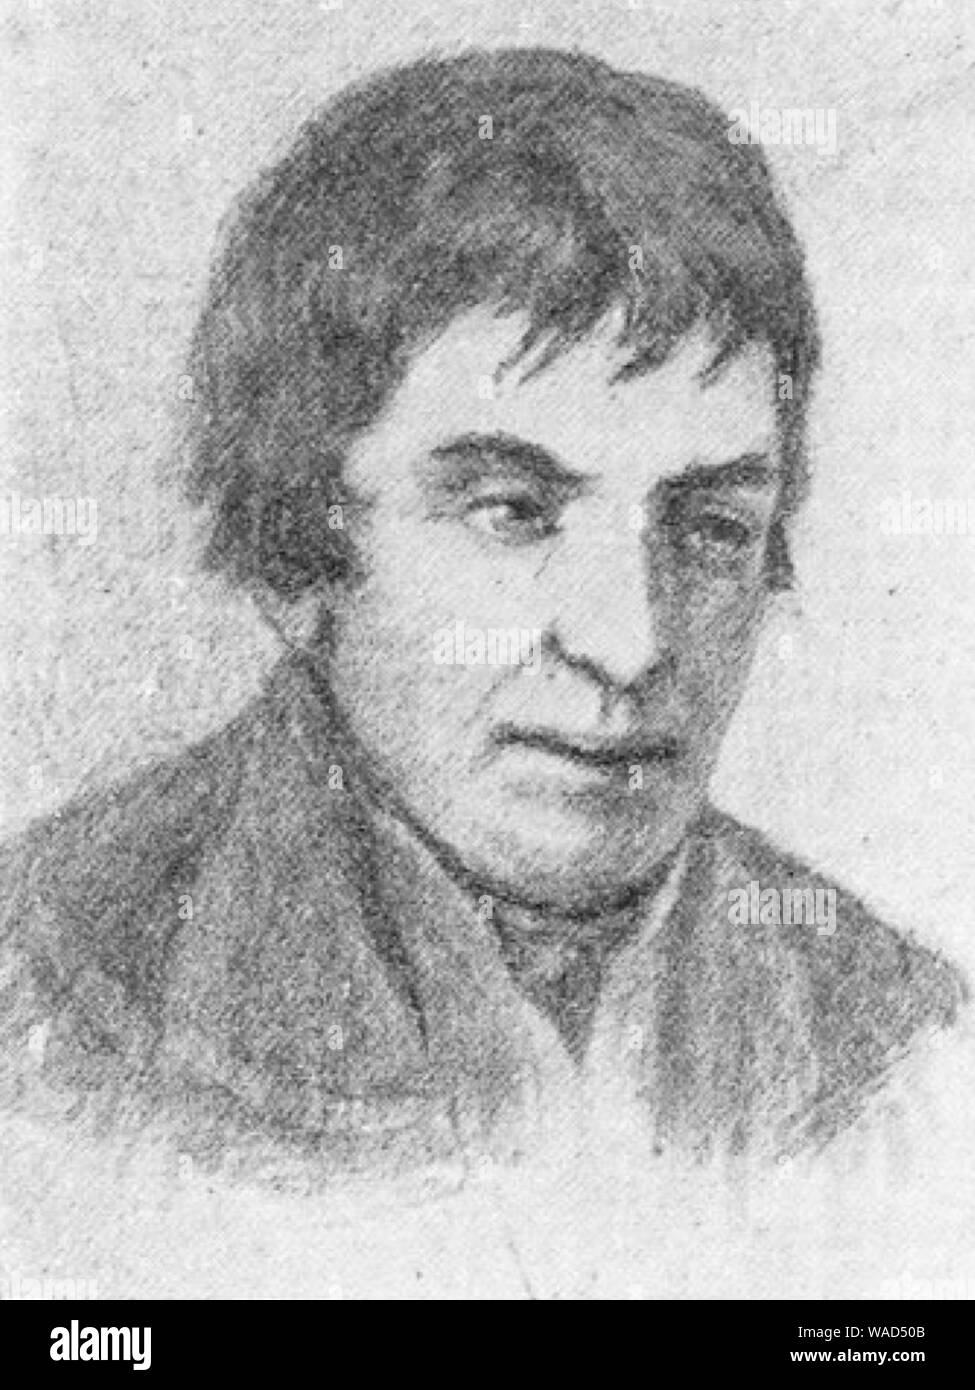 Domingo Eyzaguirre Arechavala (1775-1854). Stock Photo